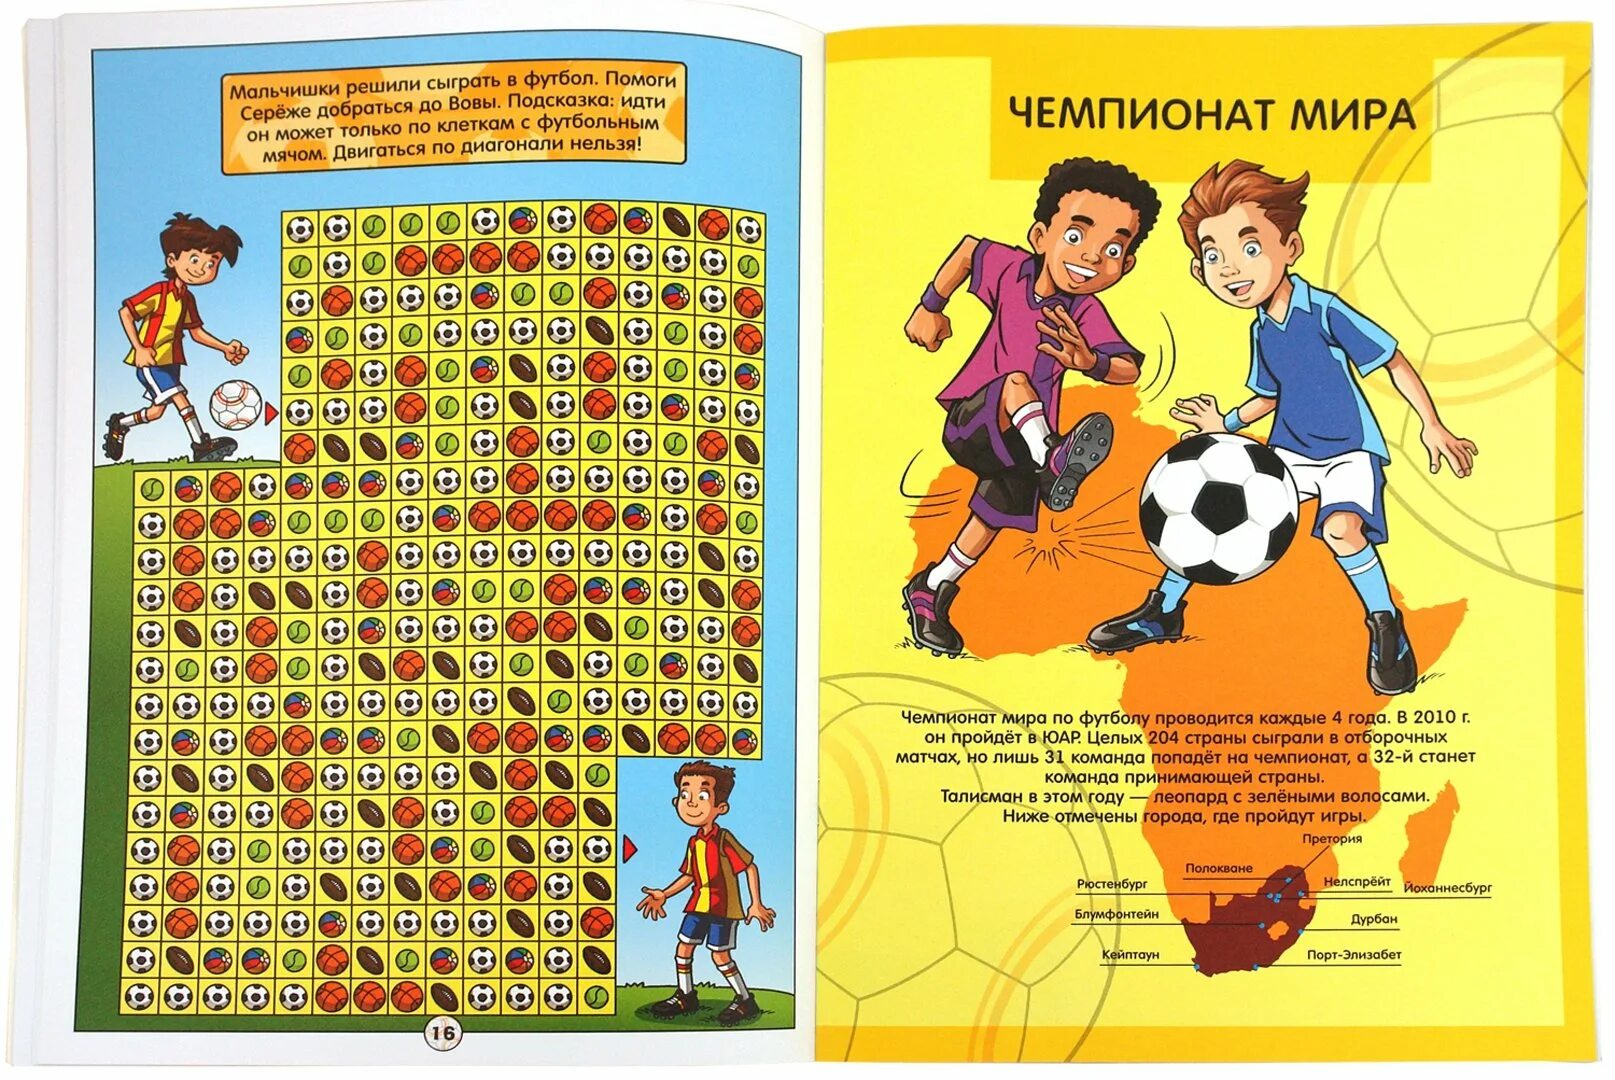 Ответы про футбол. Футбольные журналы для детей. Книгампро футбол для детей. Футбол задания для детей. Детский журнал про футбол.